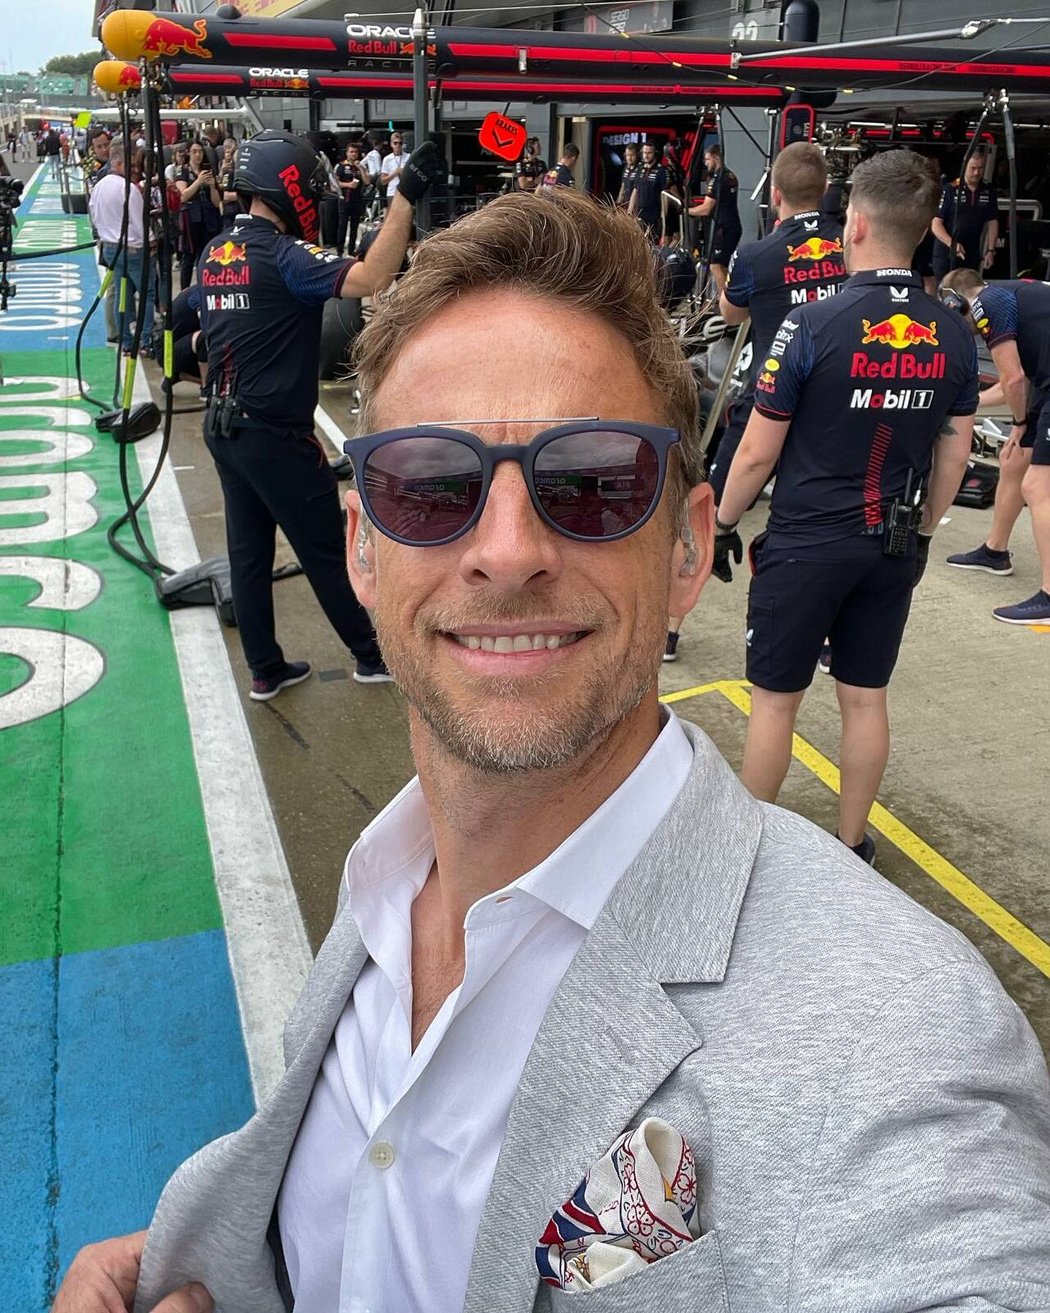 Bývalý automobilový jezdec Jenson Button prodává svůj luxusní obytný vůz